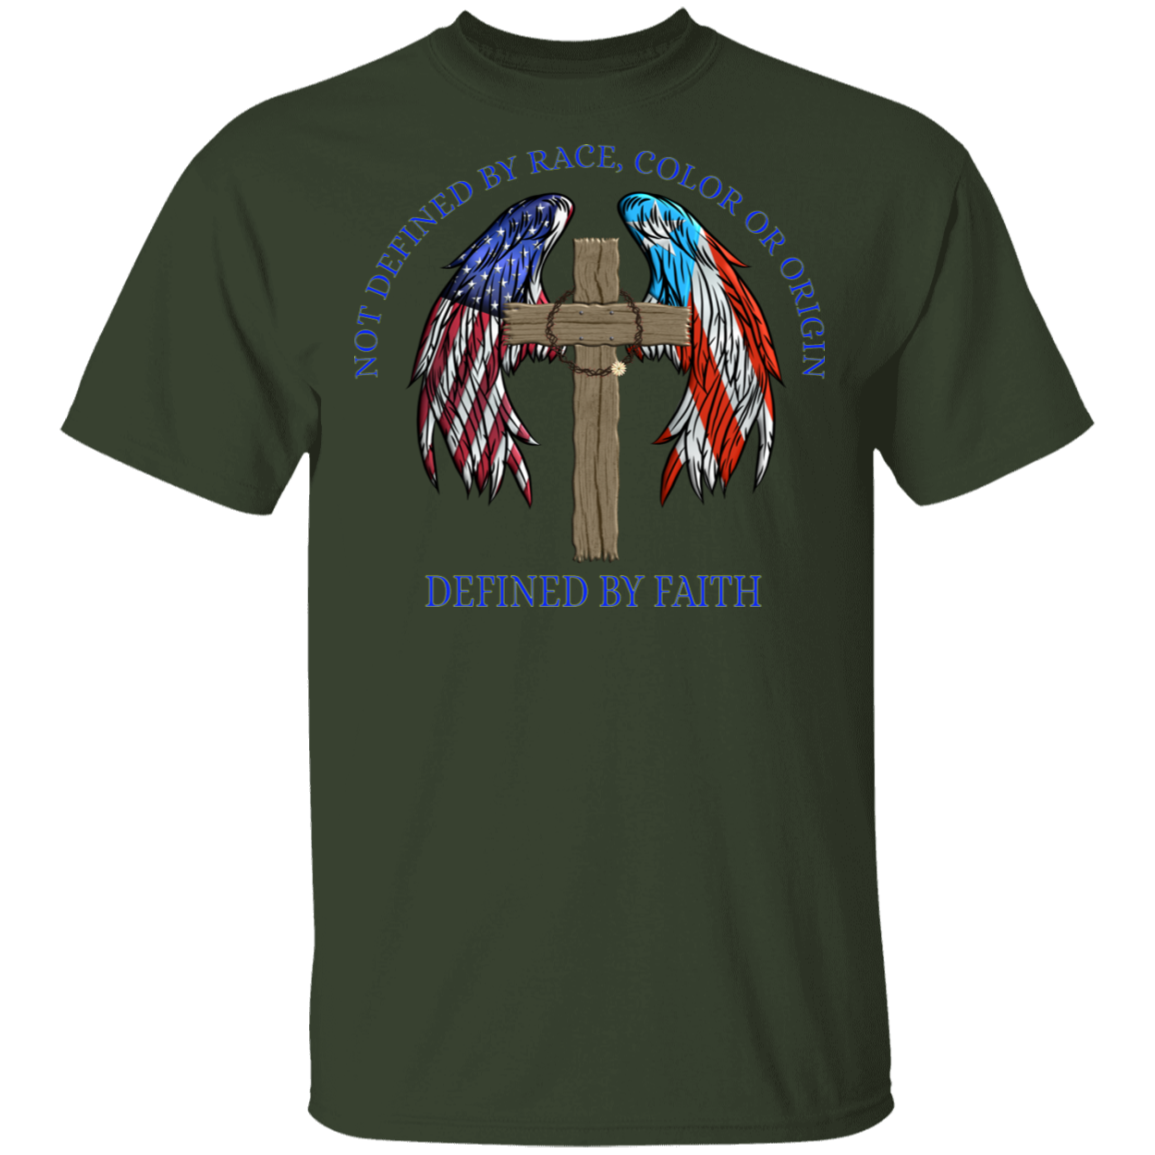 Defined by Faith 5.3 oz. T-Shirt